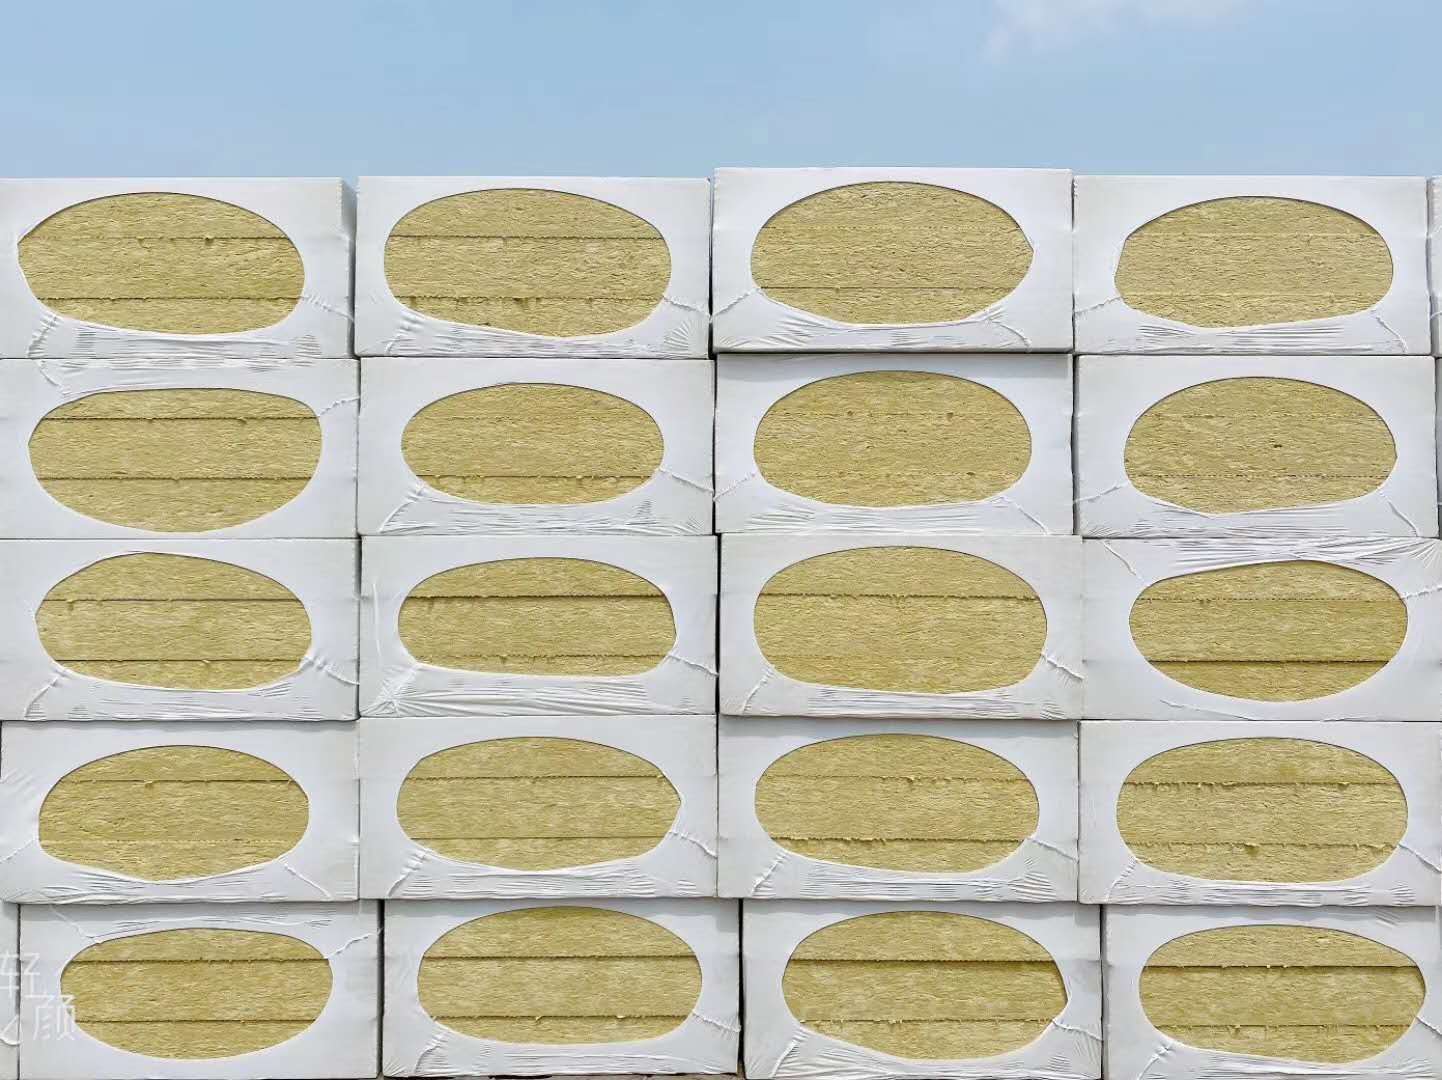   尊龙凯时人生就是博z6com岩棉板为何能迅速占领中原岩棉板市场